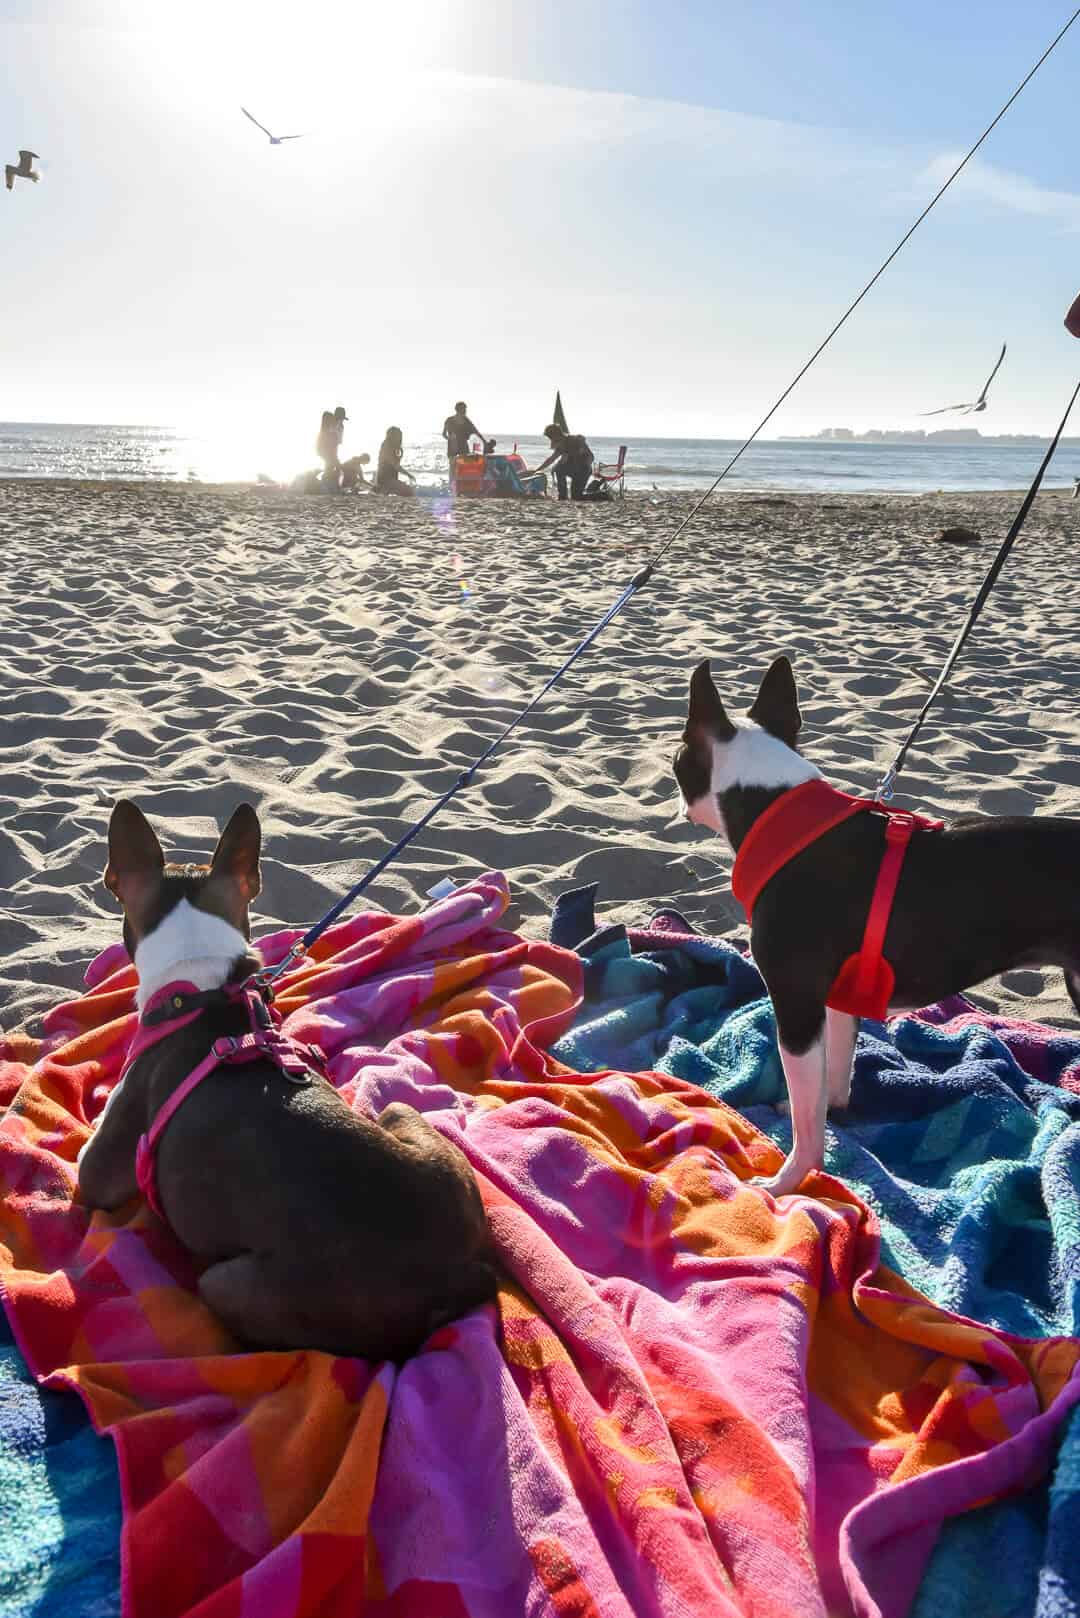 Lexie and Bridget on a colorful towel on a sandy beach.